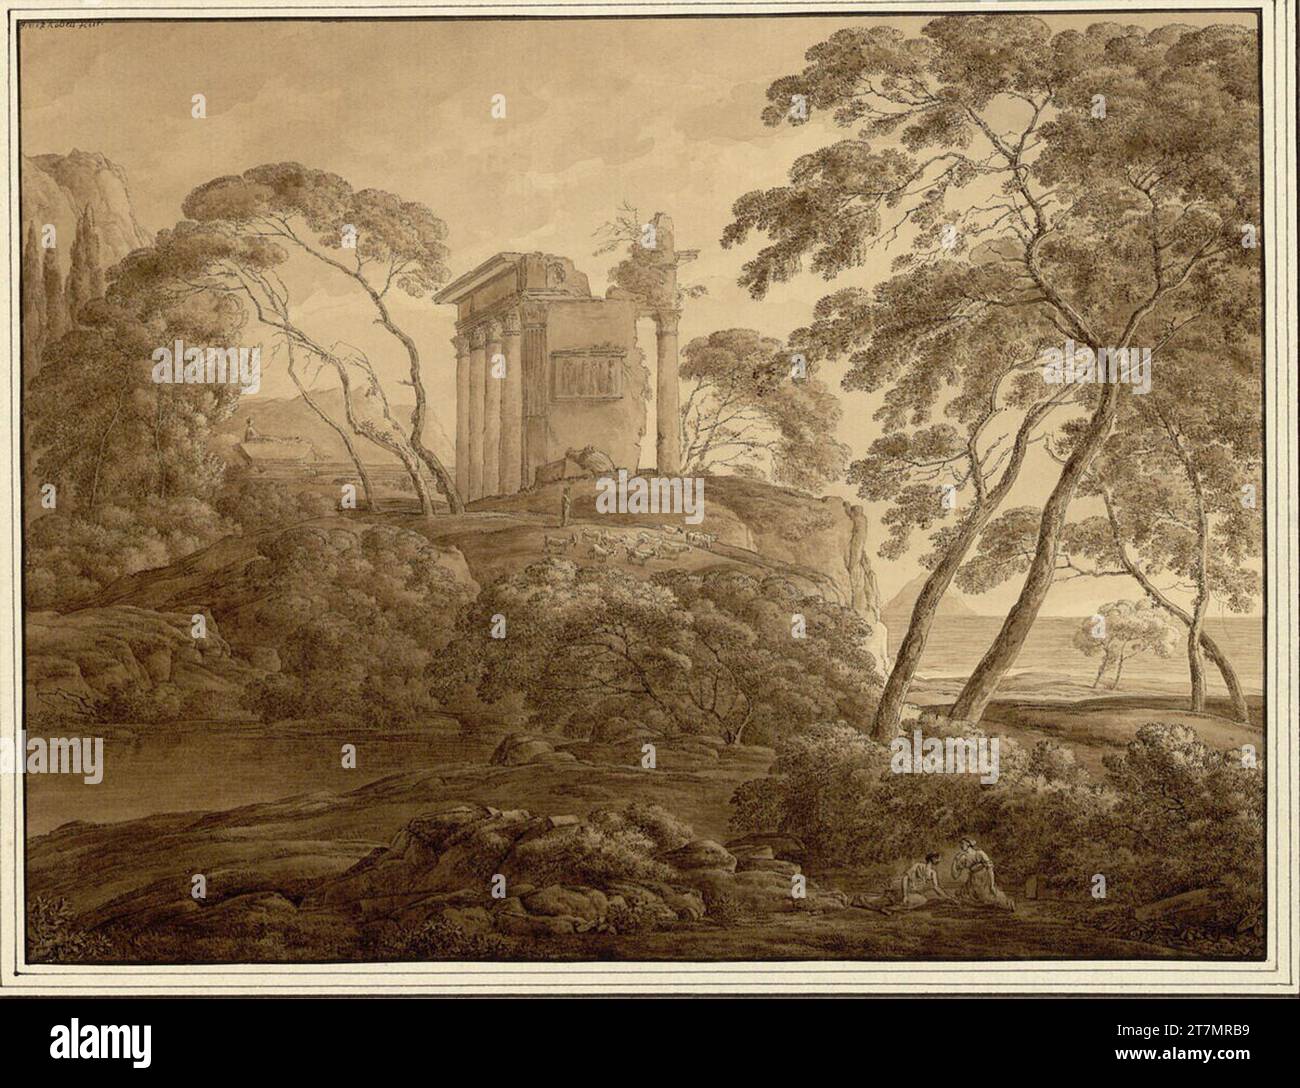 Franz Innocenz Josef Kobell paysage arcadien dans la lumière du soir avec une ruine de temple sur un rocher ; bâton de figure. FEDER en noir, pinceau en brun, lavé ; ligne de bordure marron 1800-20, 1800/1820 Banque D'Images